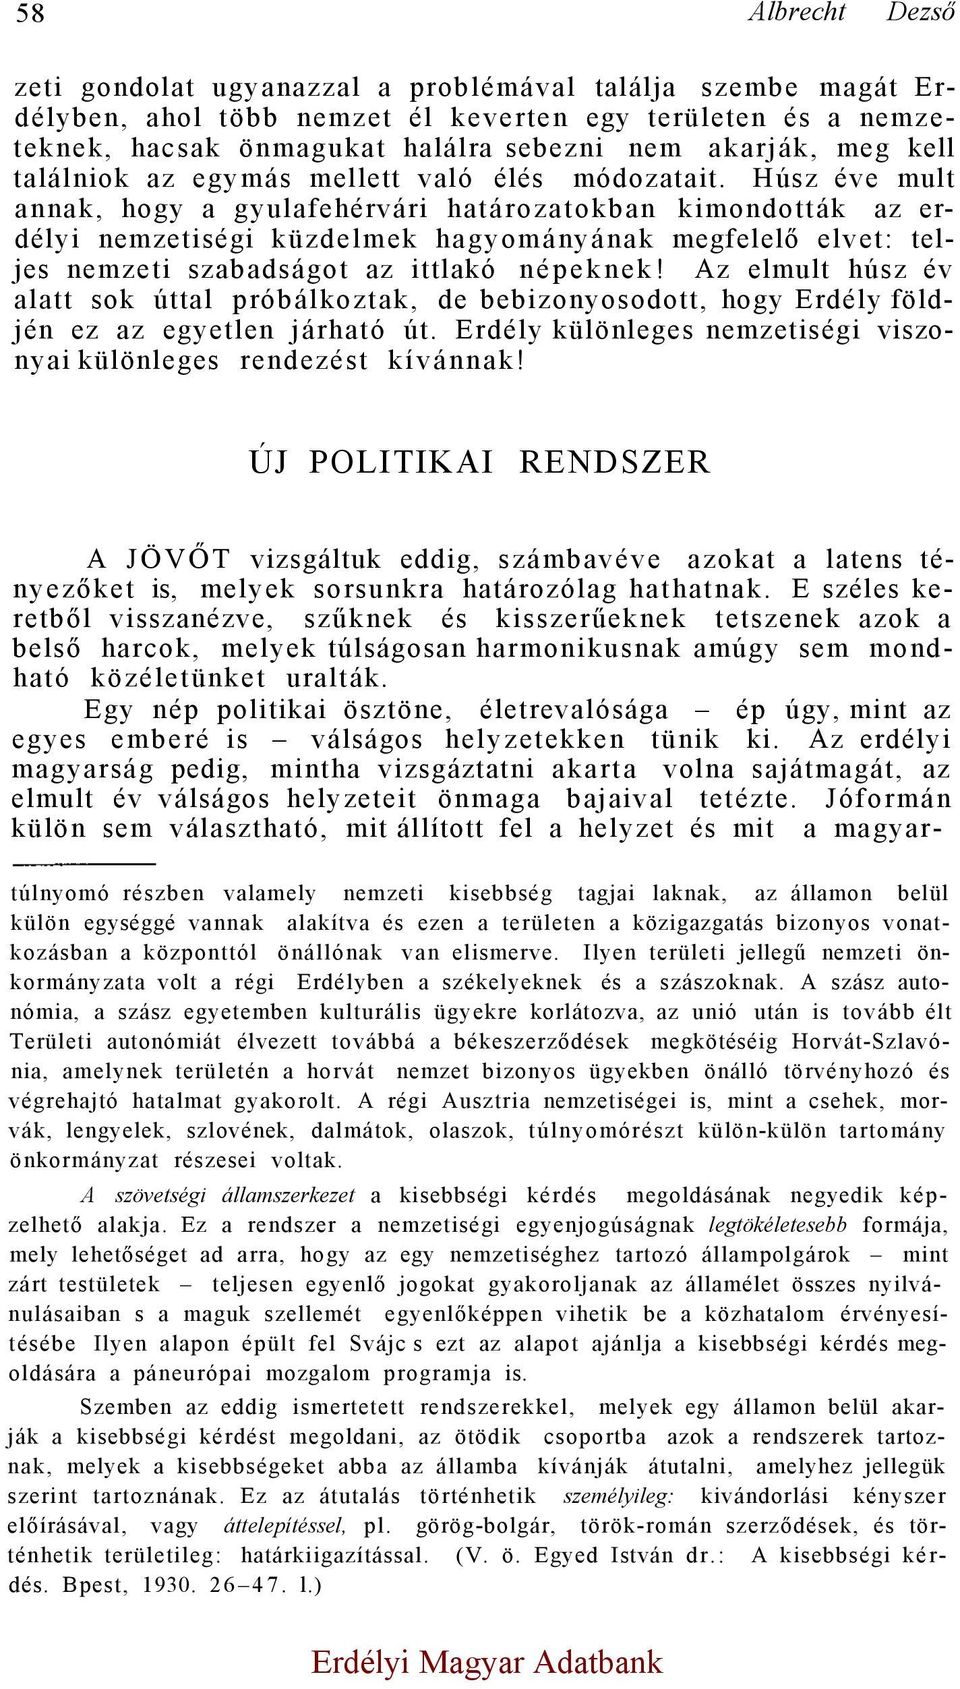 Húsz éve mult annak, hogy a gyulafehérvári határozatokban kimondották az erdélyi nemzetiségi küzdelmek hagyományának megfelelő elvet: teljes nemzeti szabadságot az ittlakó népeknek!